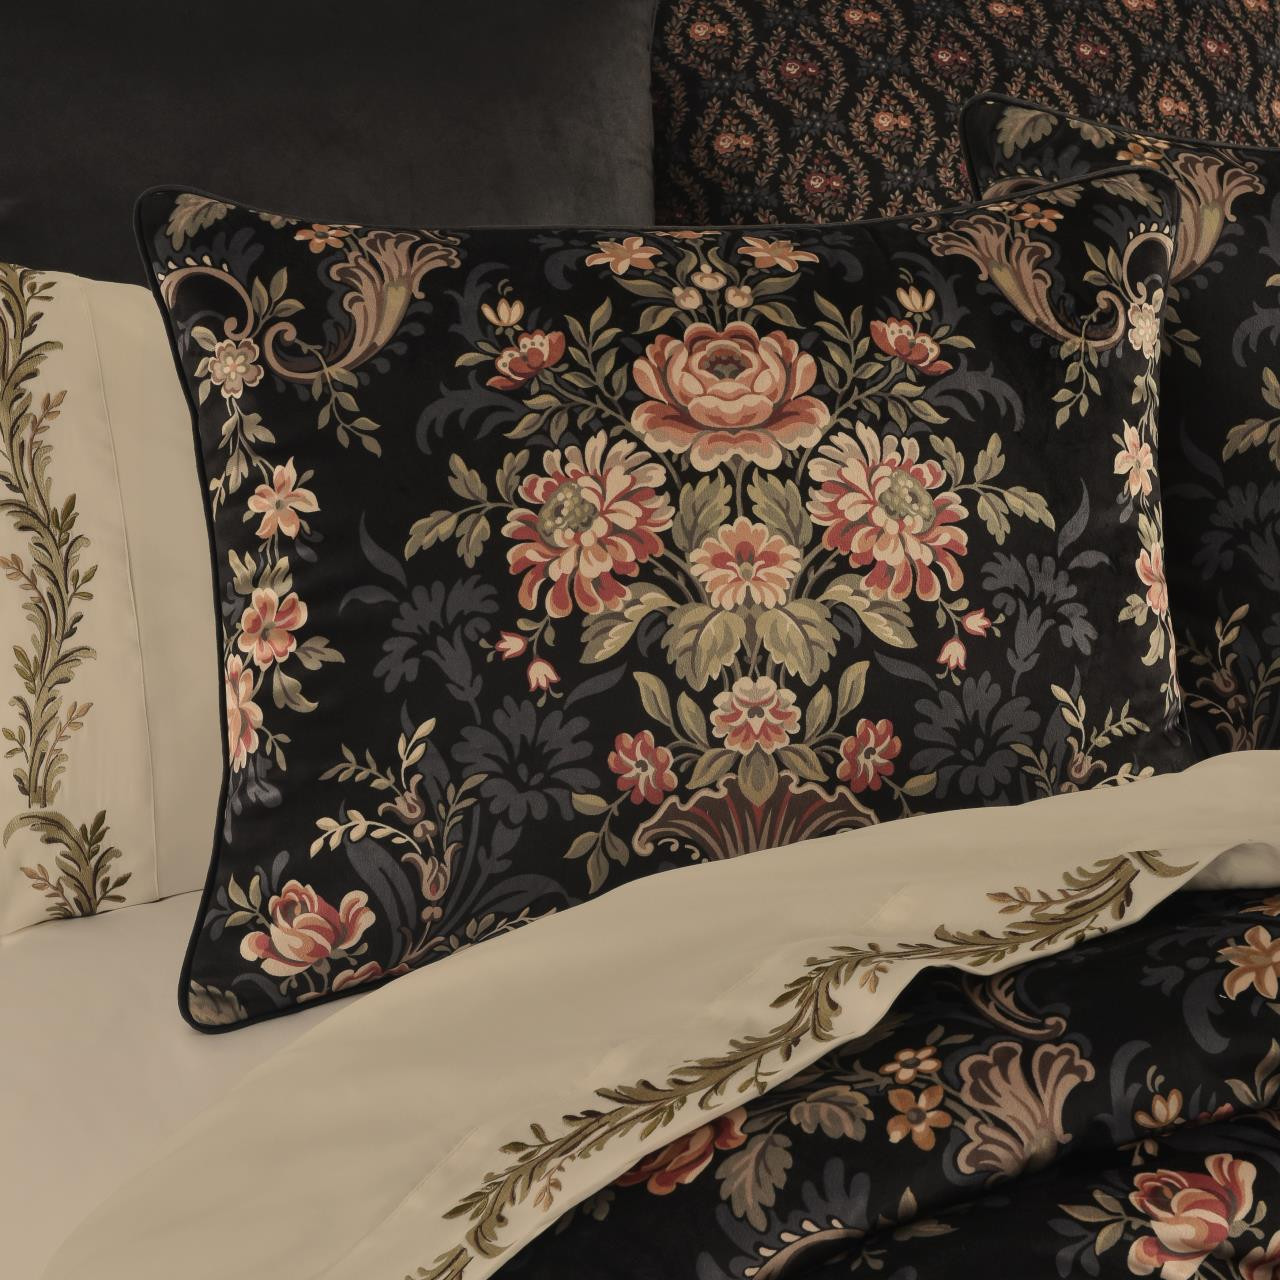 Chanticleer Black Comforter Collection -